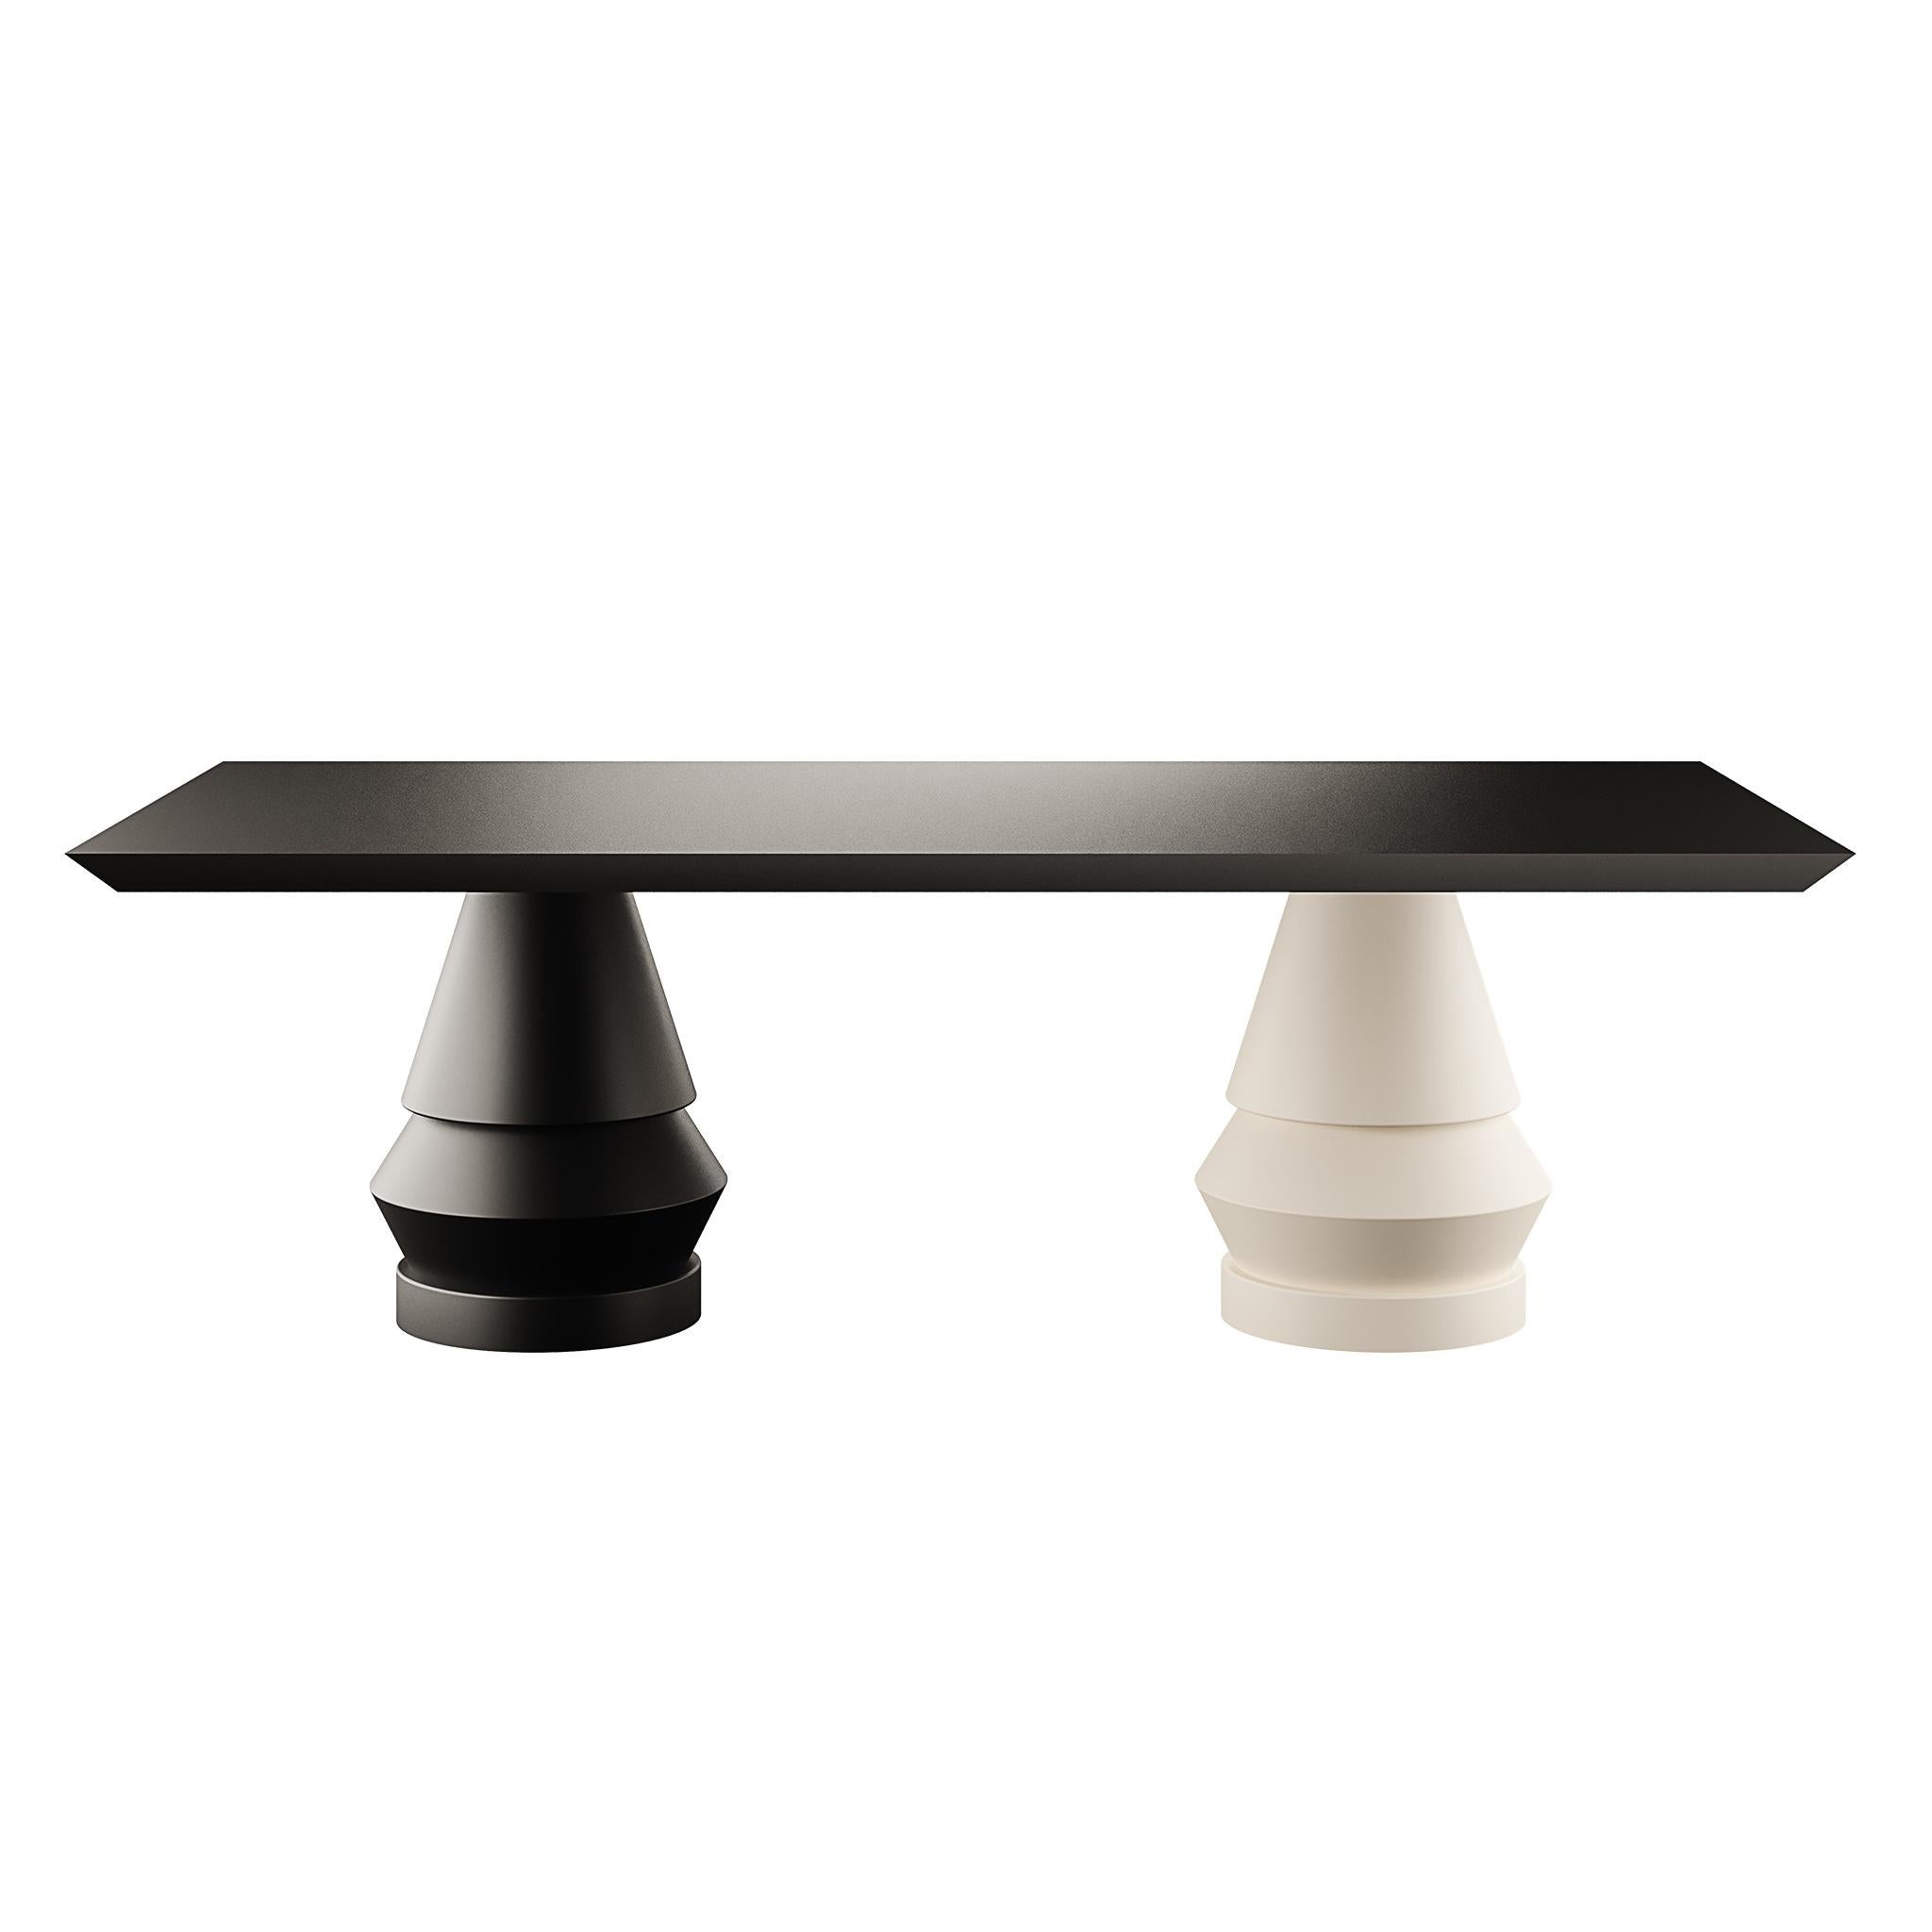 Nous vous présentons notre table à manger moderne en bois laqué, une pièce distinctive en deux couleurs, méticuleusement fabriquée et peinte à la main, représentant le design du 21e siècle. Cette table n'est pas seulement un meuble fonctionnel mais